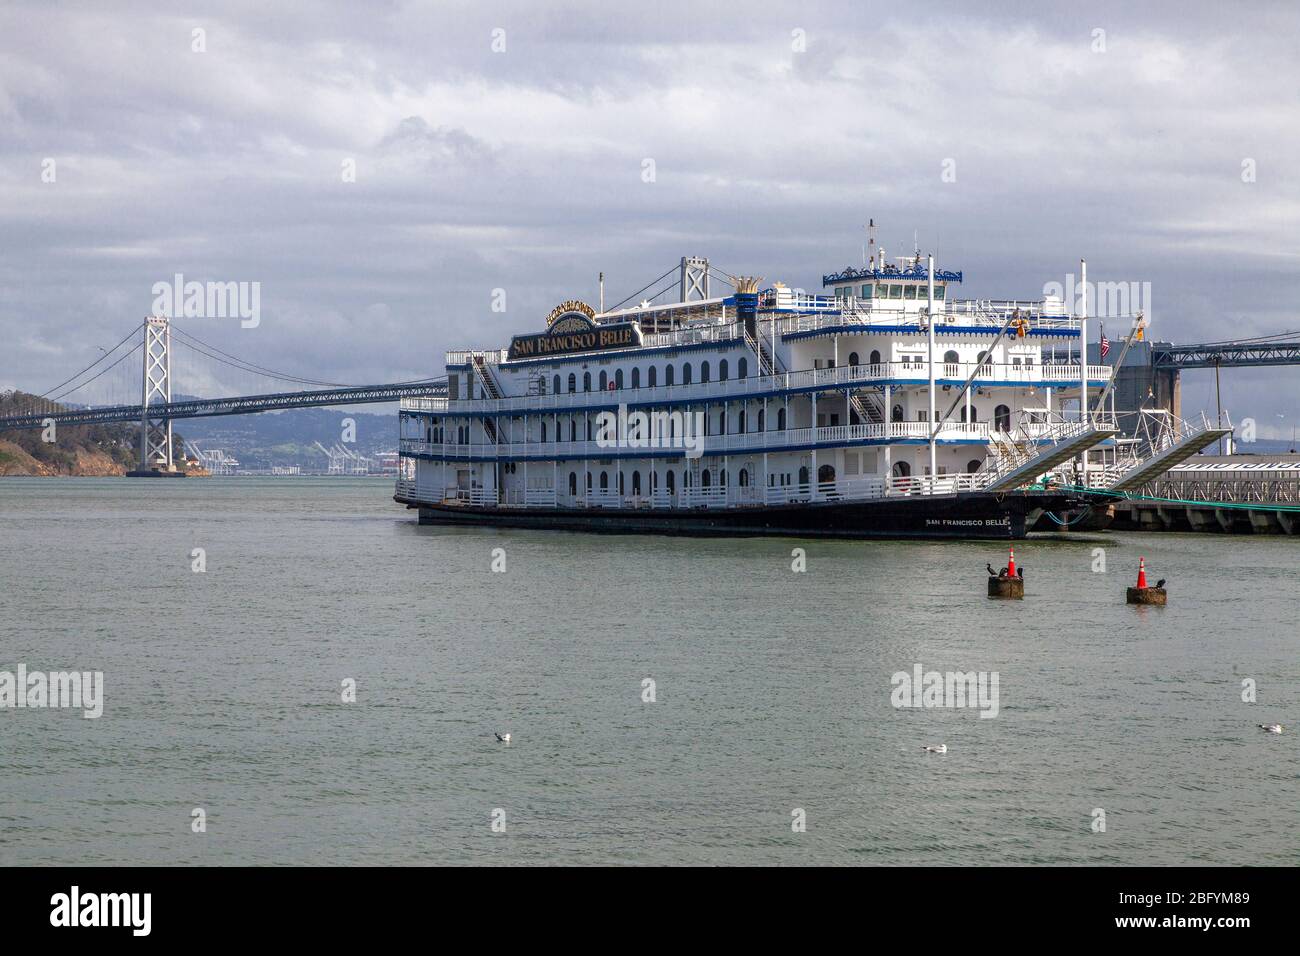 San Francisco Belle at Pier 3 in San Francisco, California Stock Photo